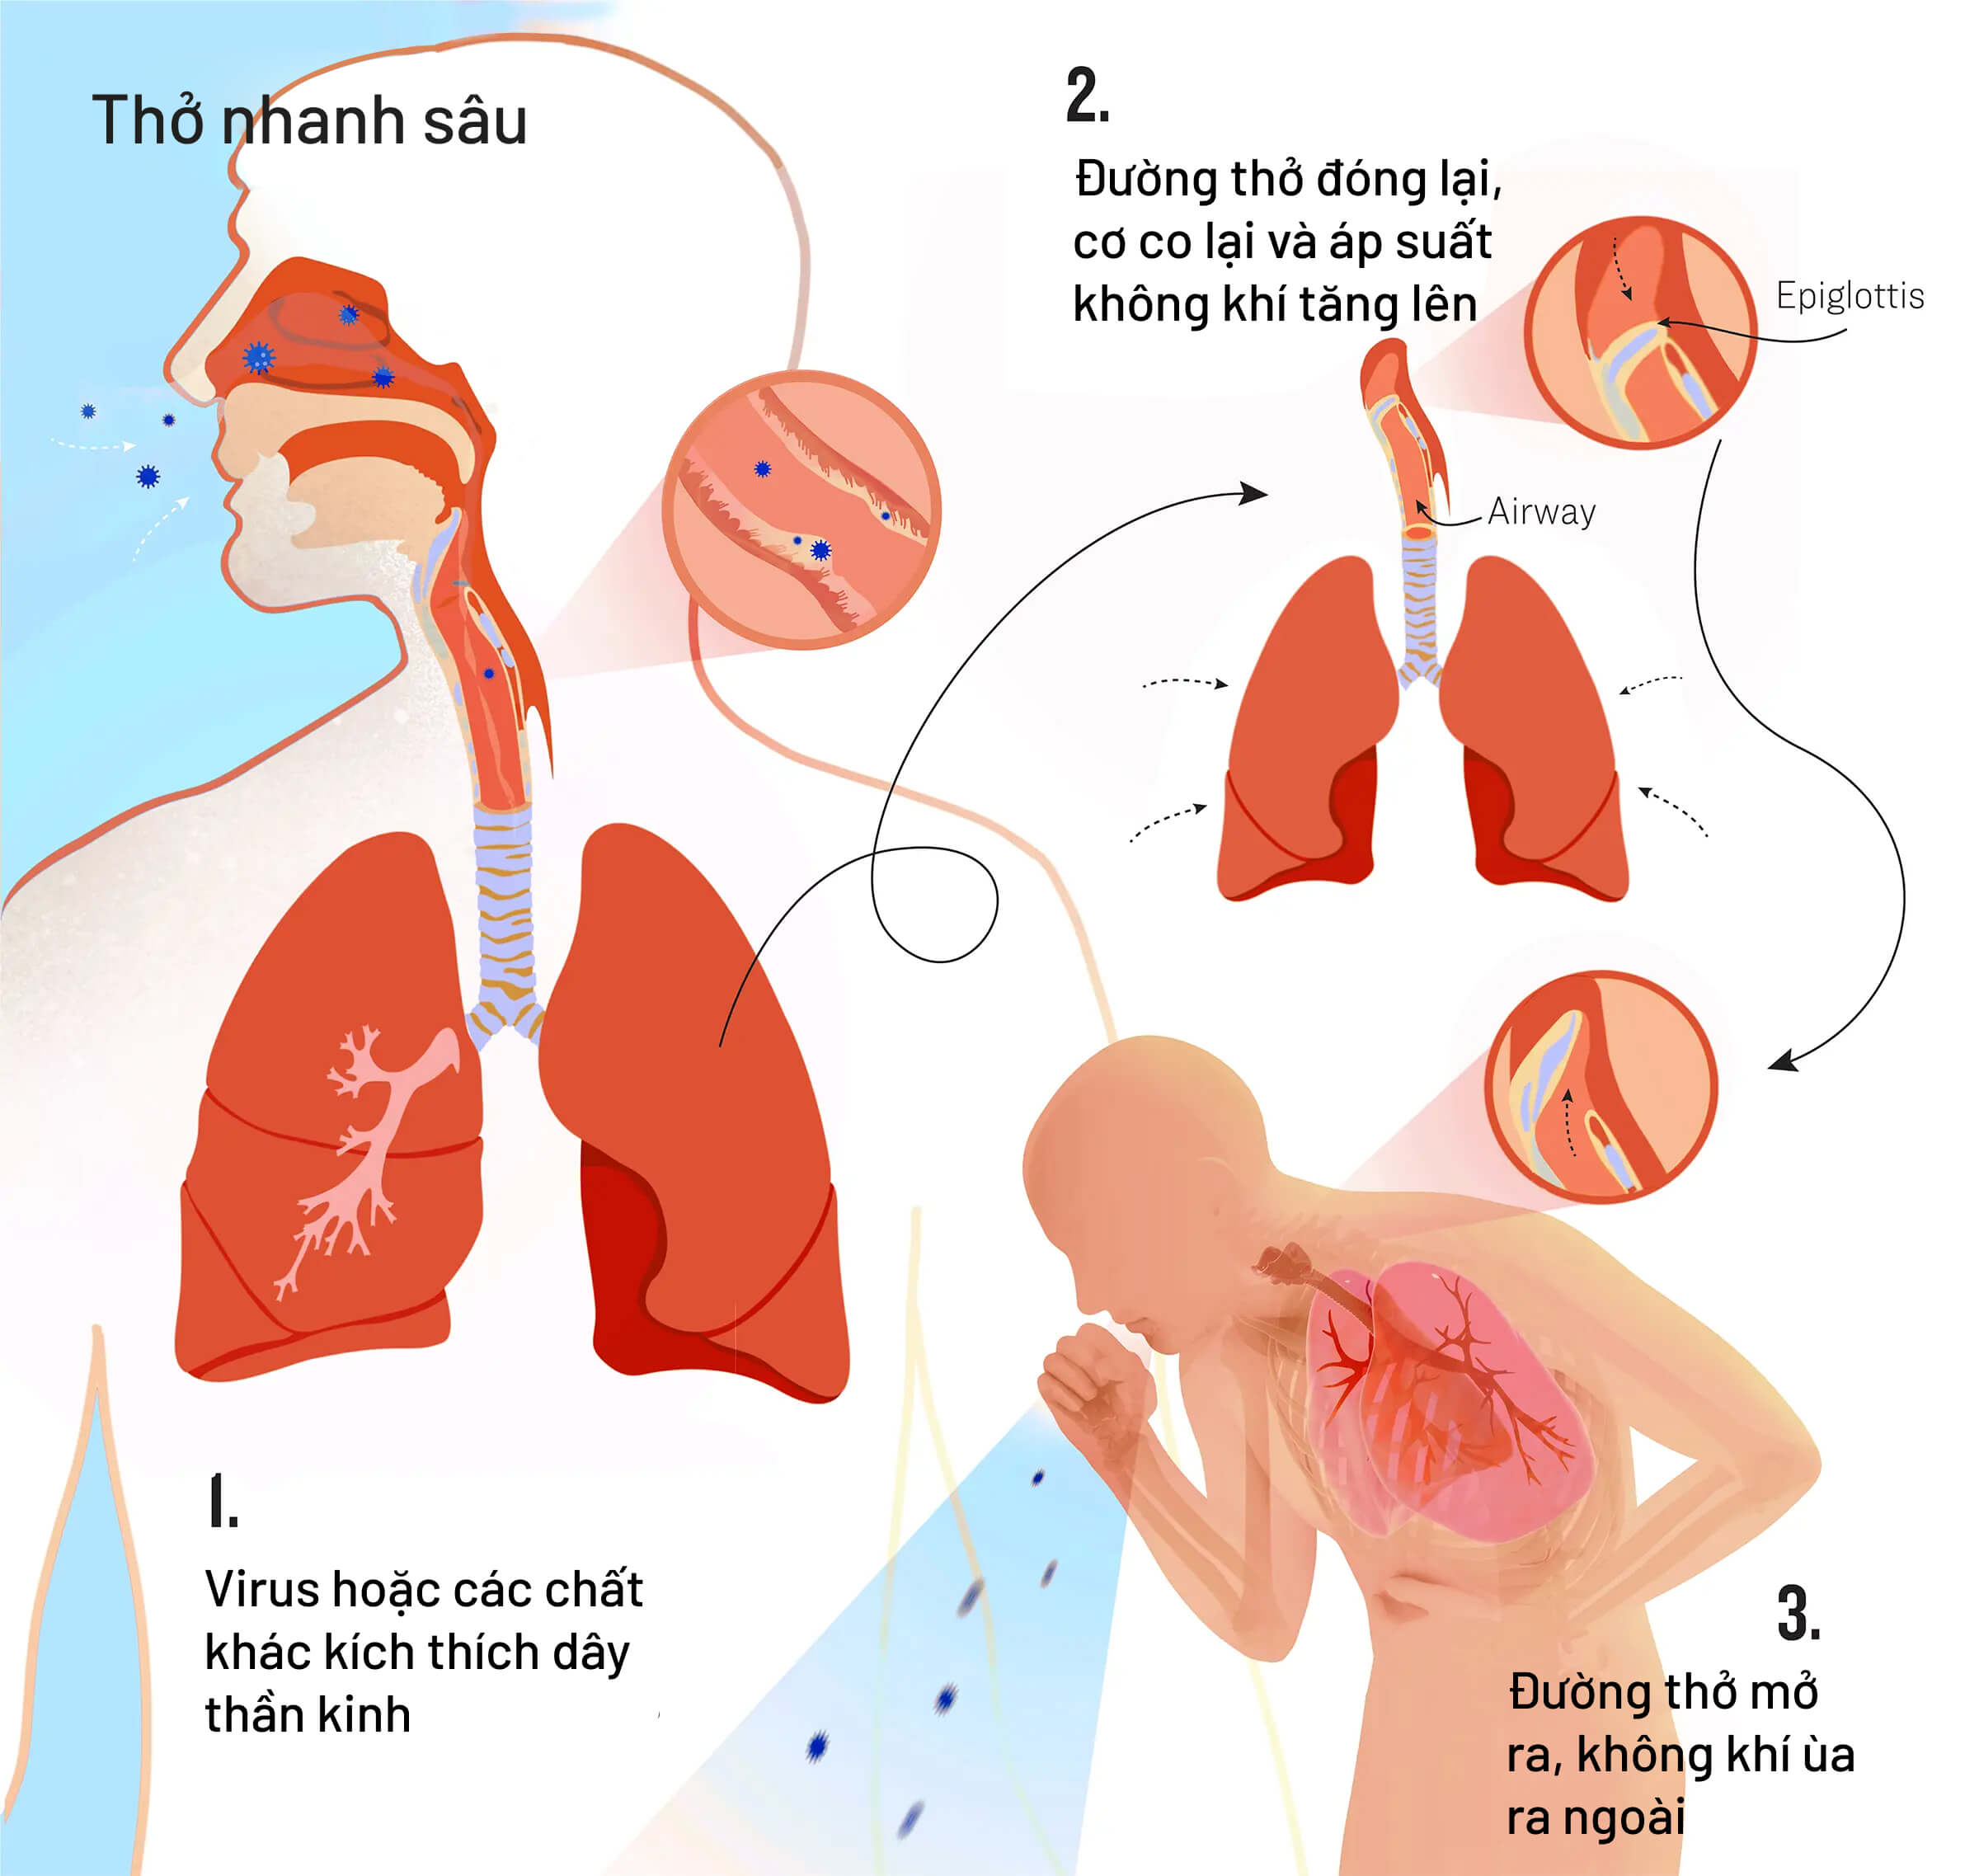 Các quá trình xảy ra trong cơ thể bạn khi ho. (Minh họa của The Epoch Times, Shutterstock)